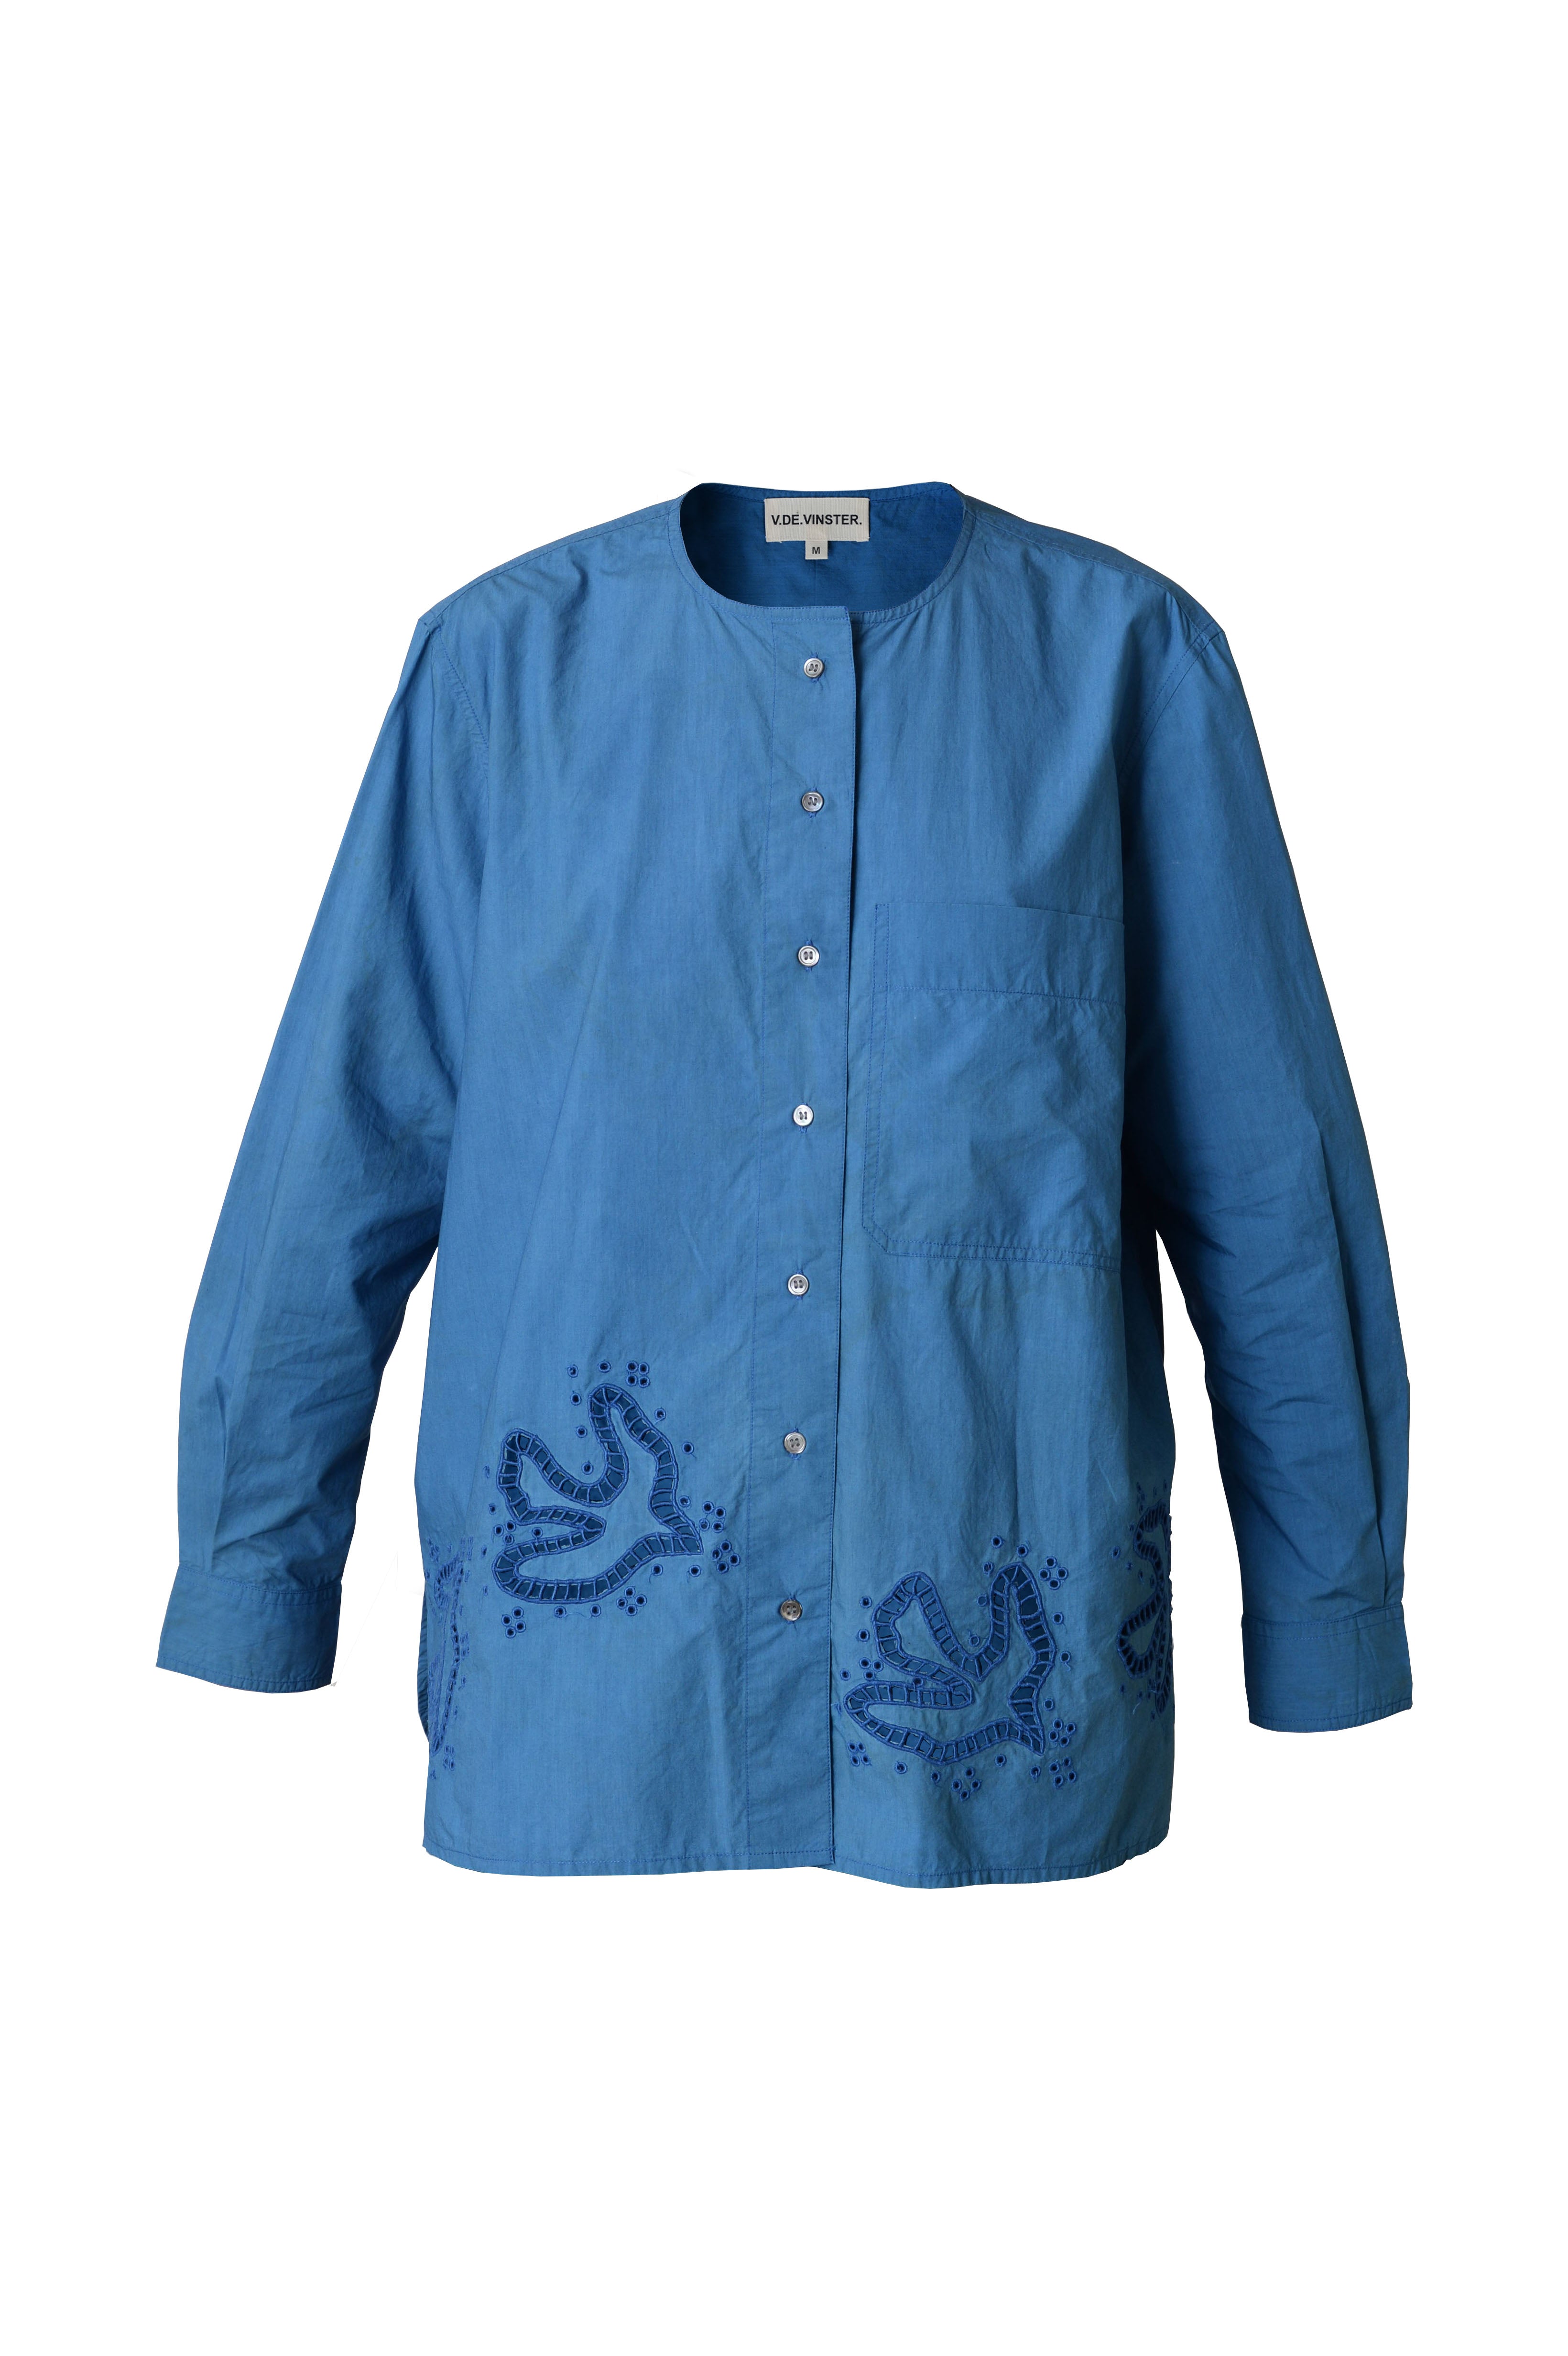 Birds blue embroidered bird shirt